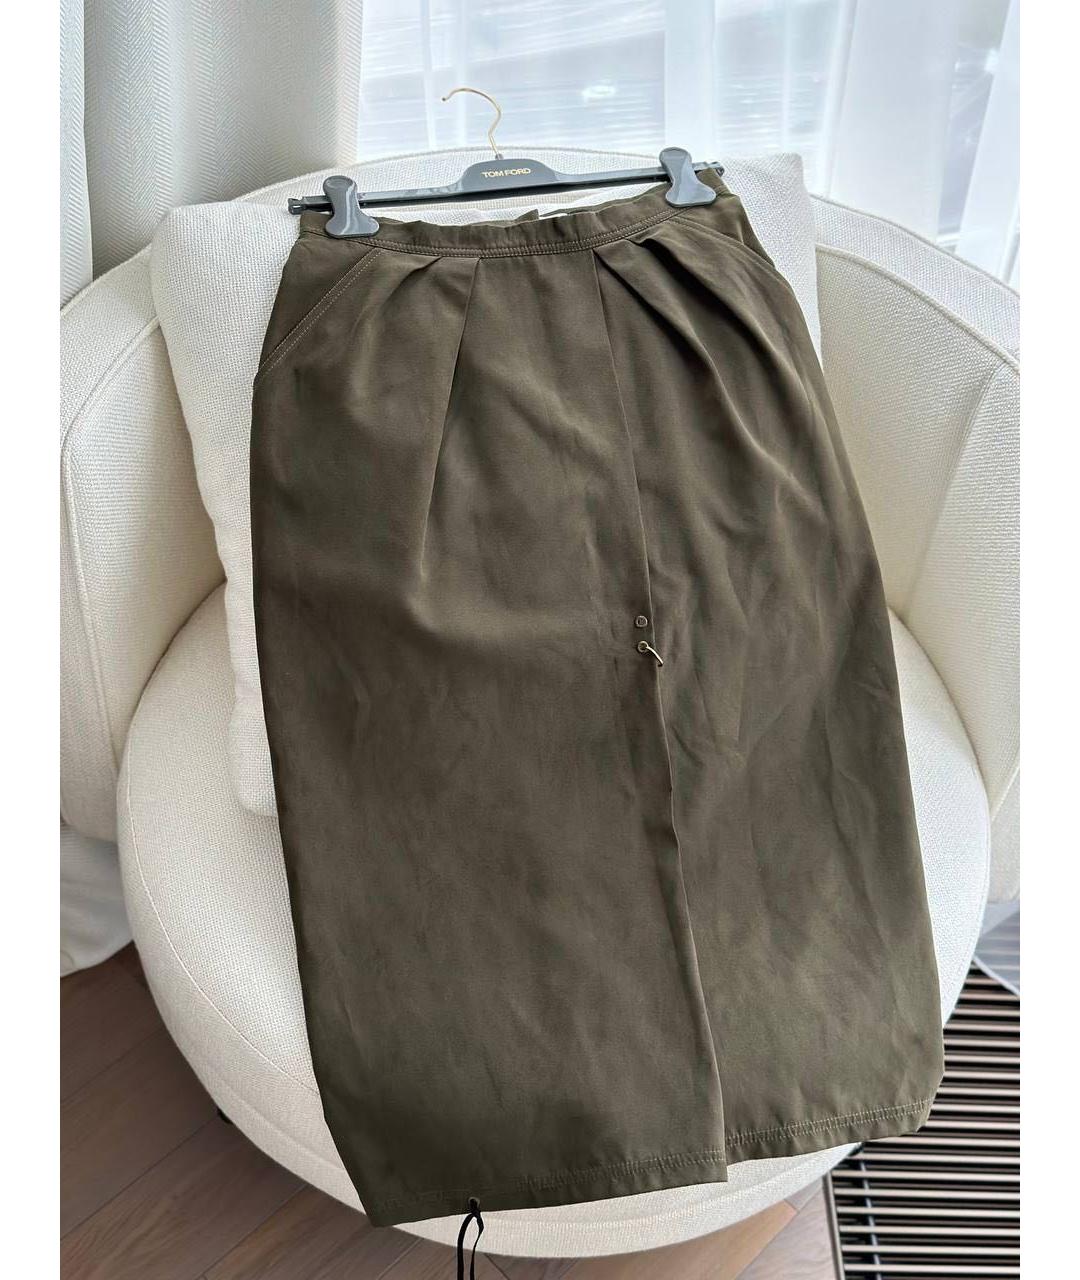 J.KIM Хаки полиэстеровая юбка миди, фото 2